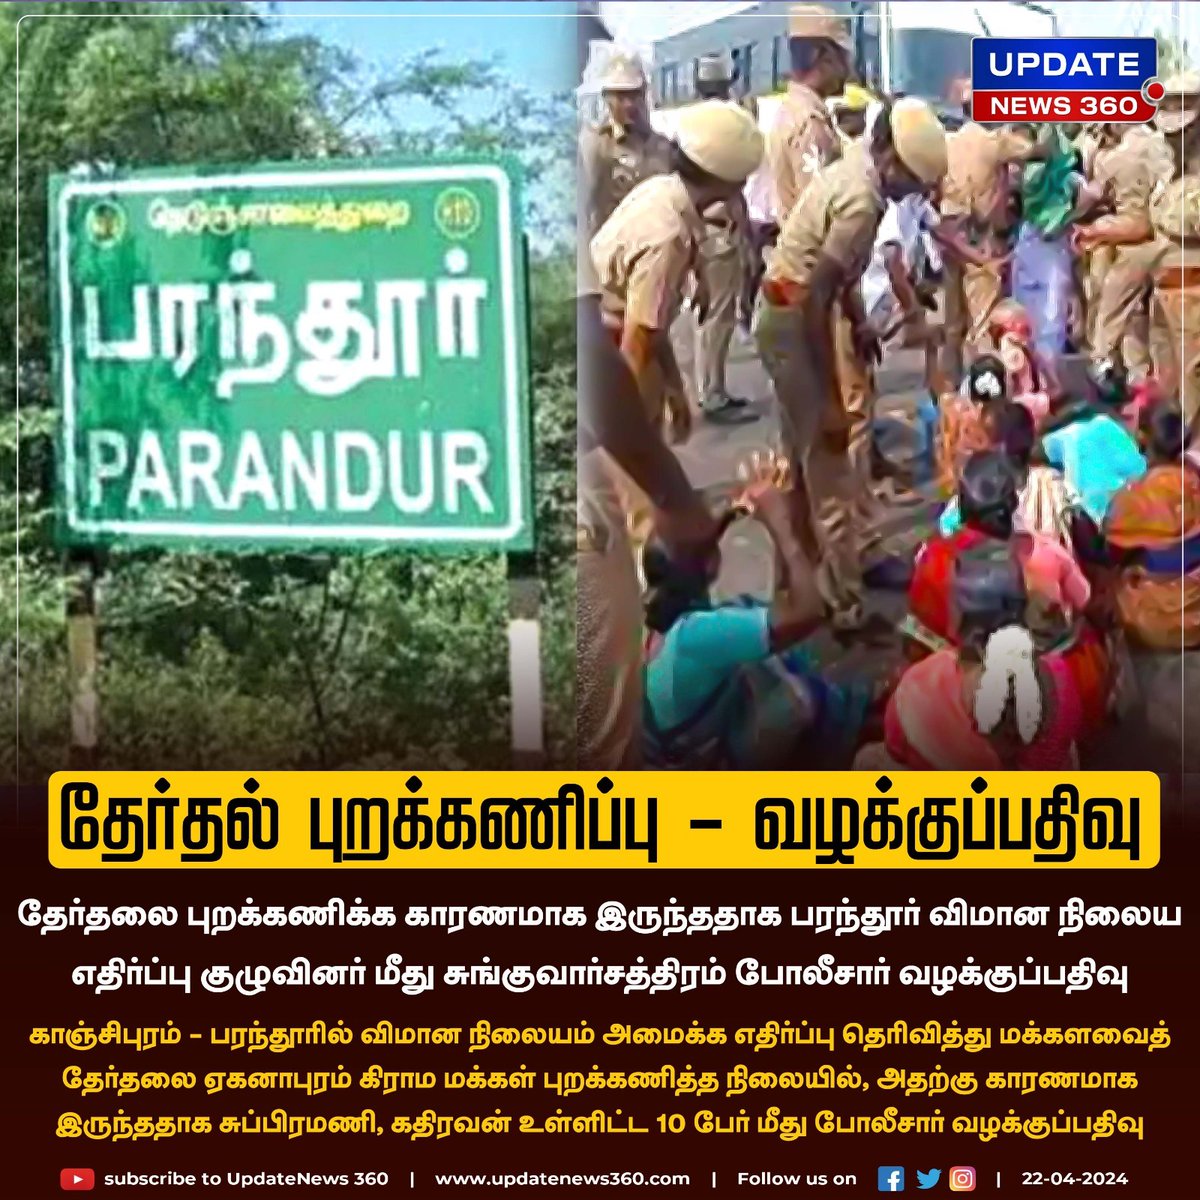 தேர்தல் புறக்கணிப்பு - பரந்தூர் விமான நிலைய எதிர்ப்பு குழுவினர் மீது வழக்குப்பதிவு

#UpdateNews | #Parandur | #ParandurAirport | #Kanchipuram | #TNElections2024 | #TNPolice | #TamilNews | #UpdateNews360